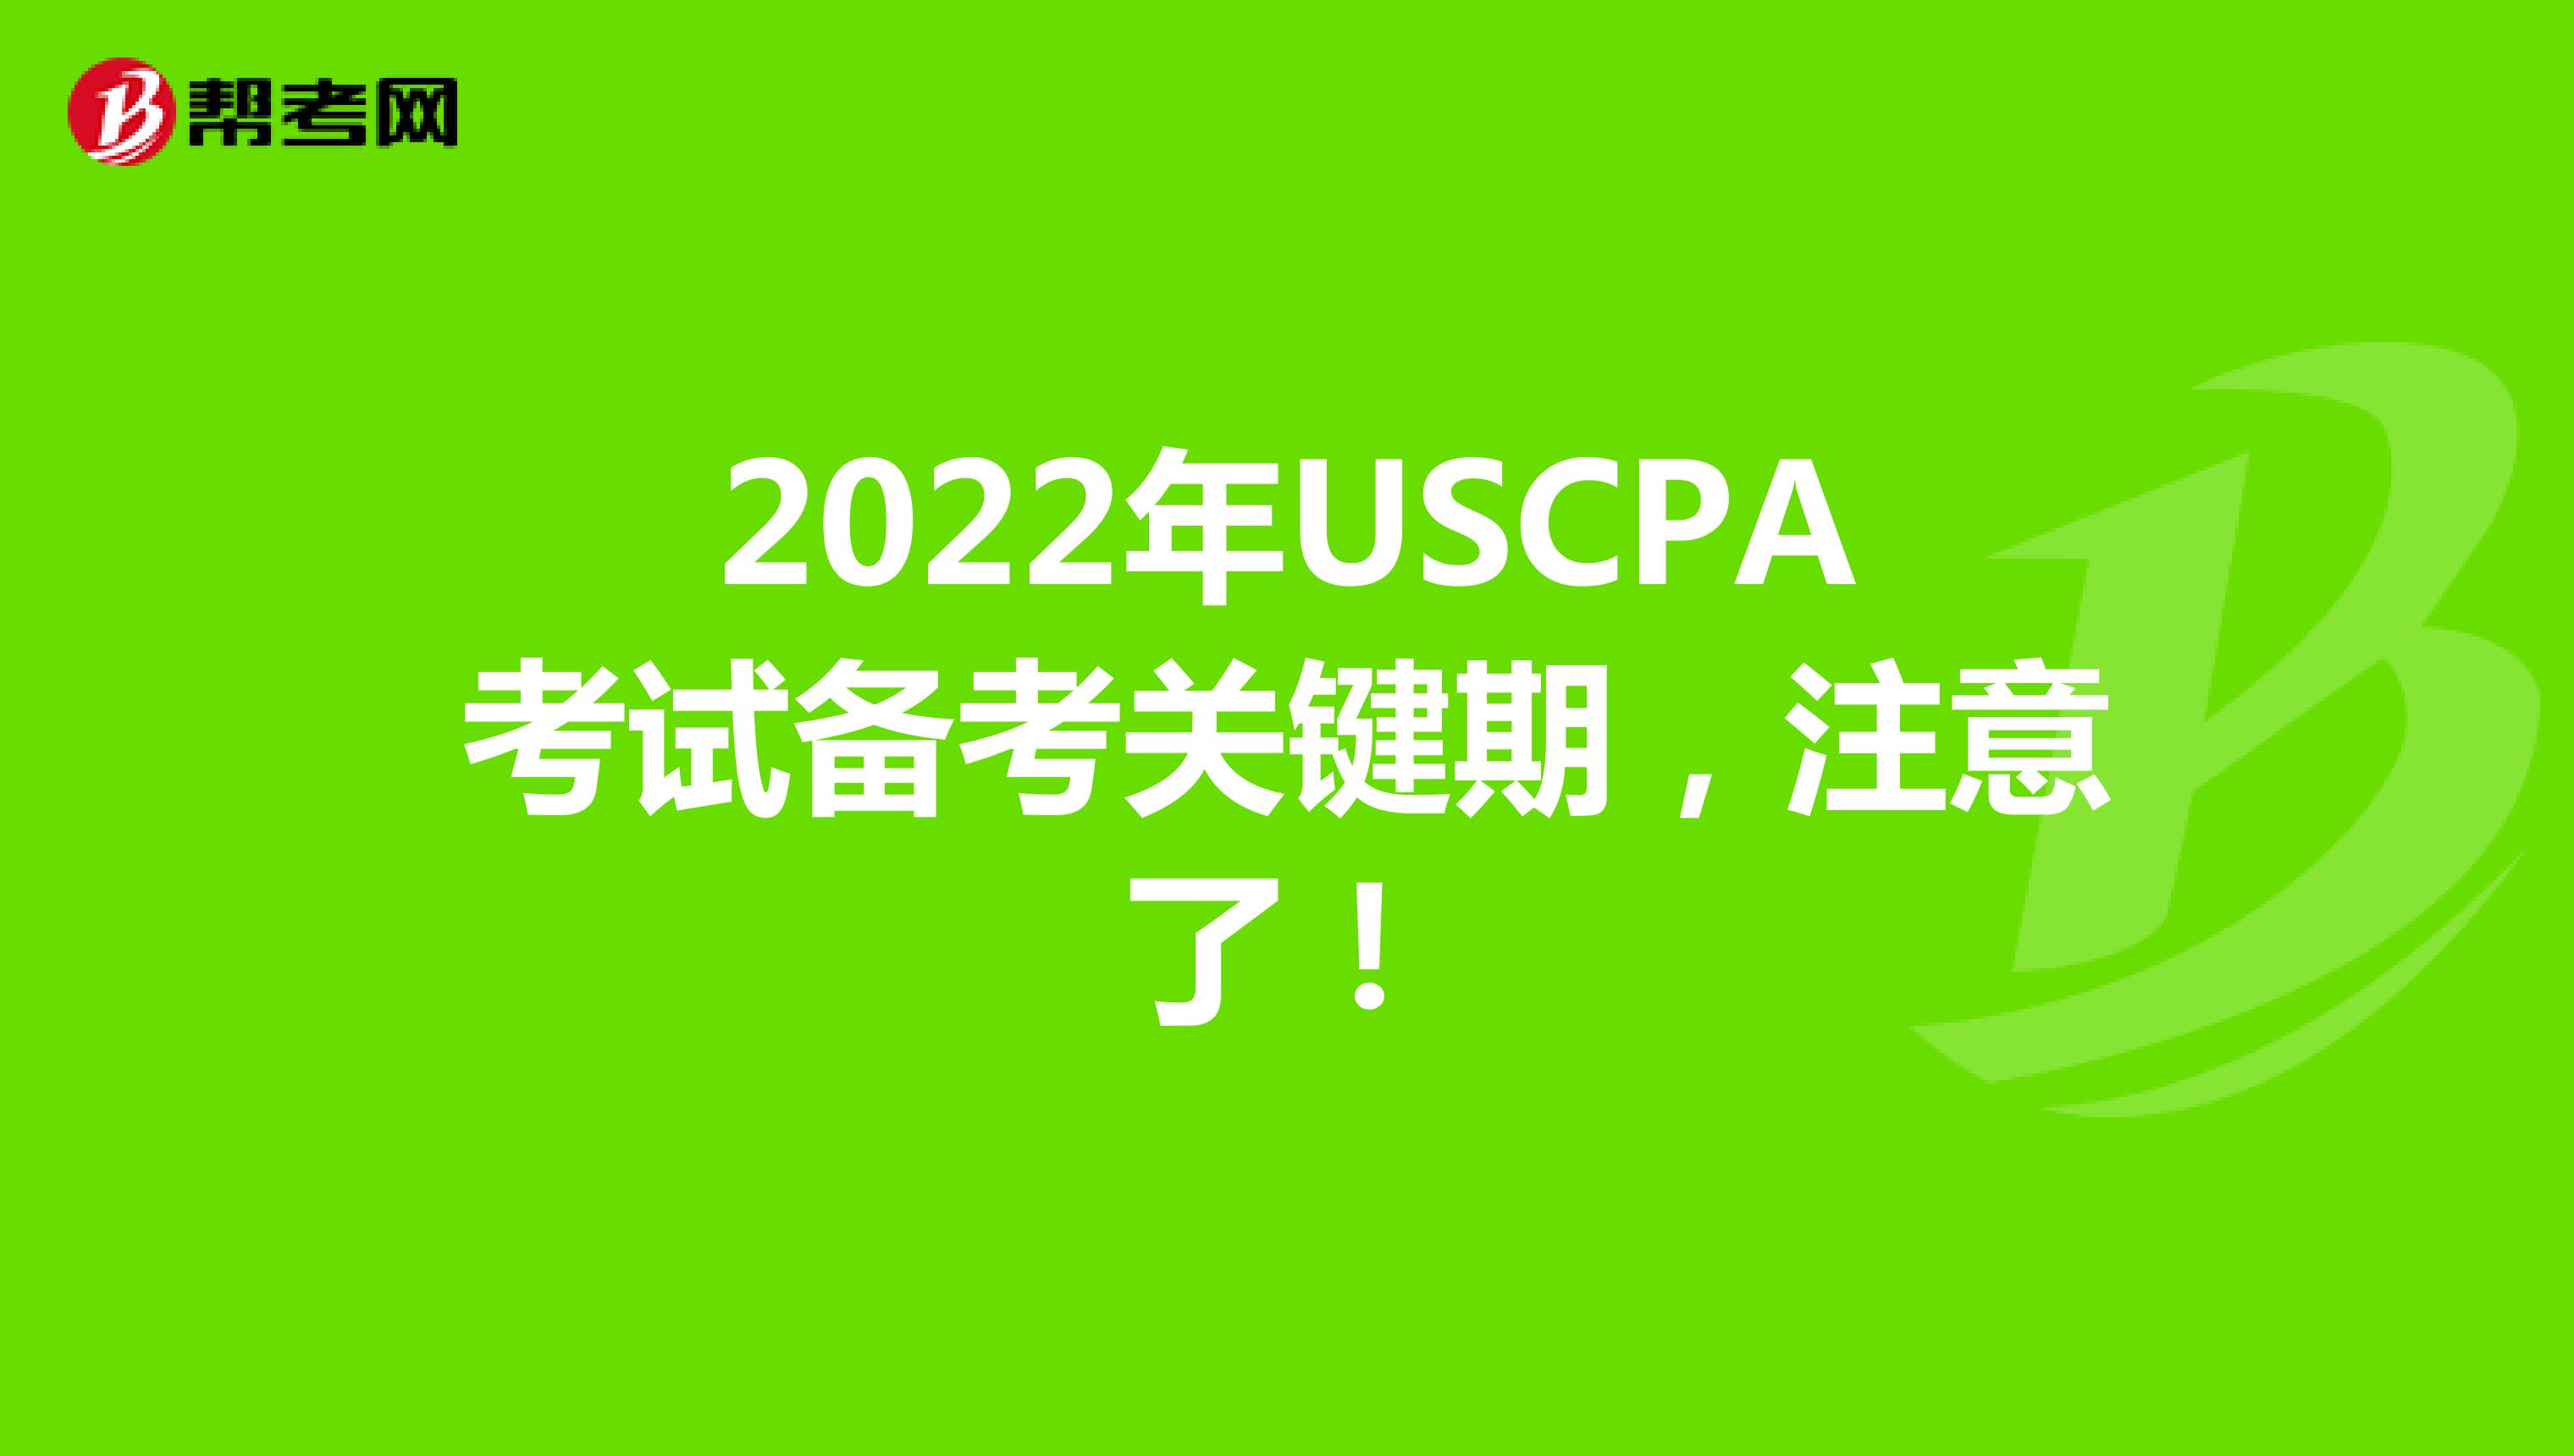 2022年USCPA考试备考关键期，注意了！